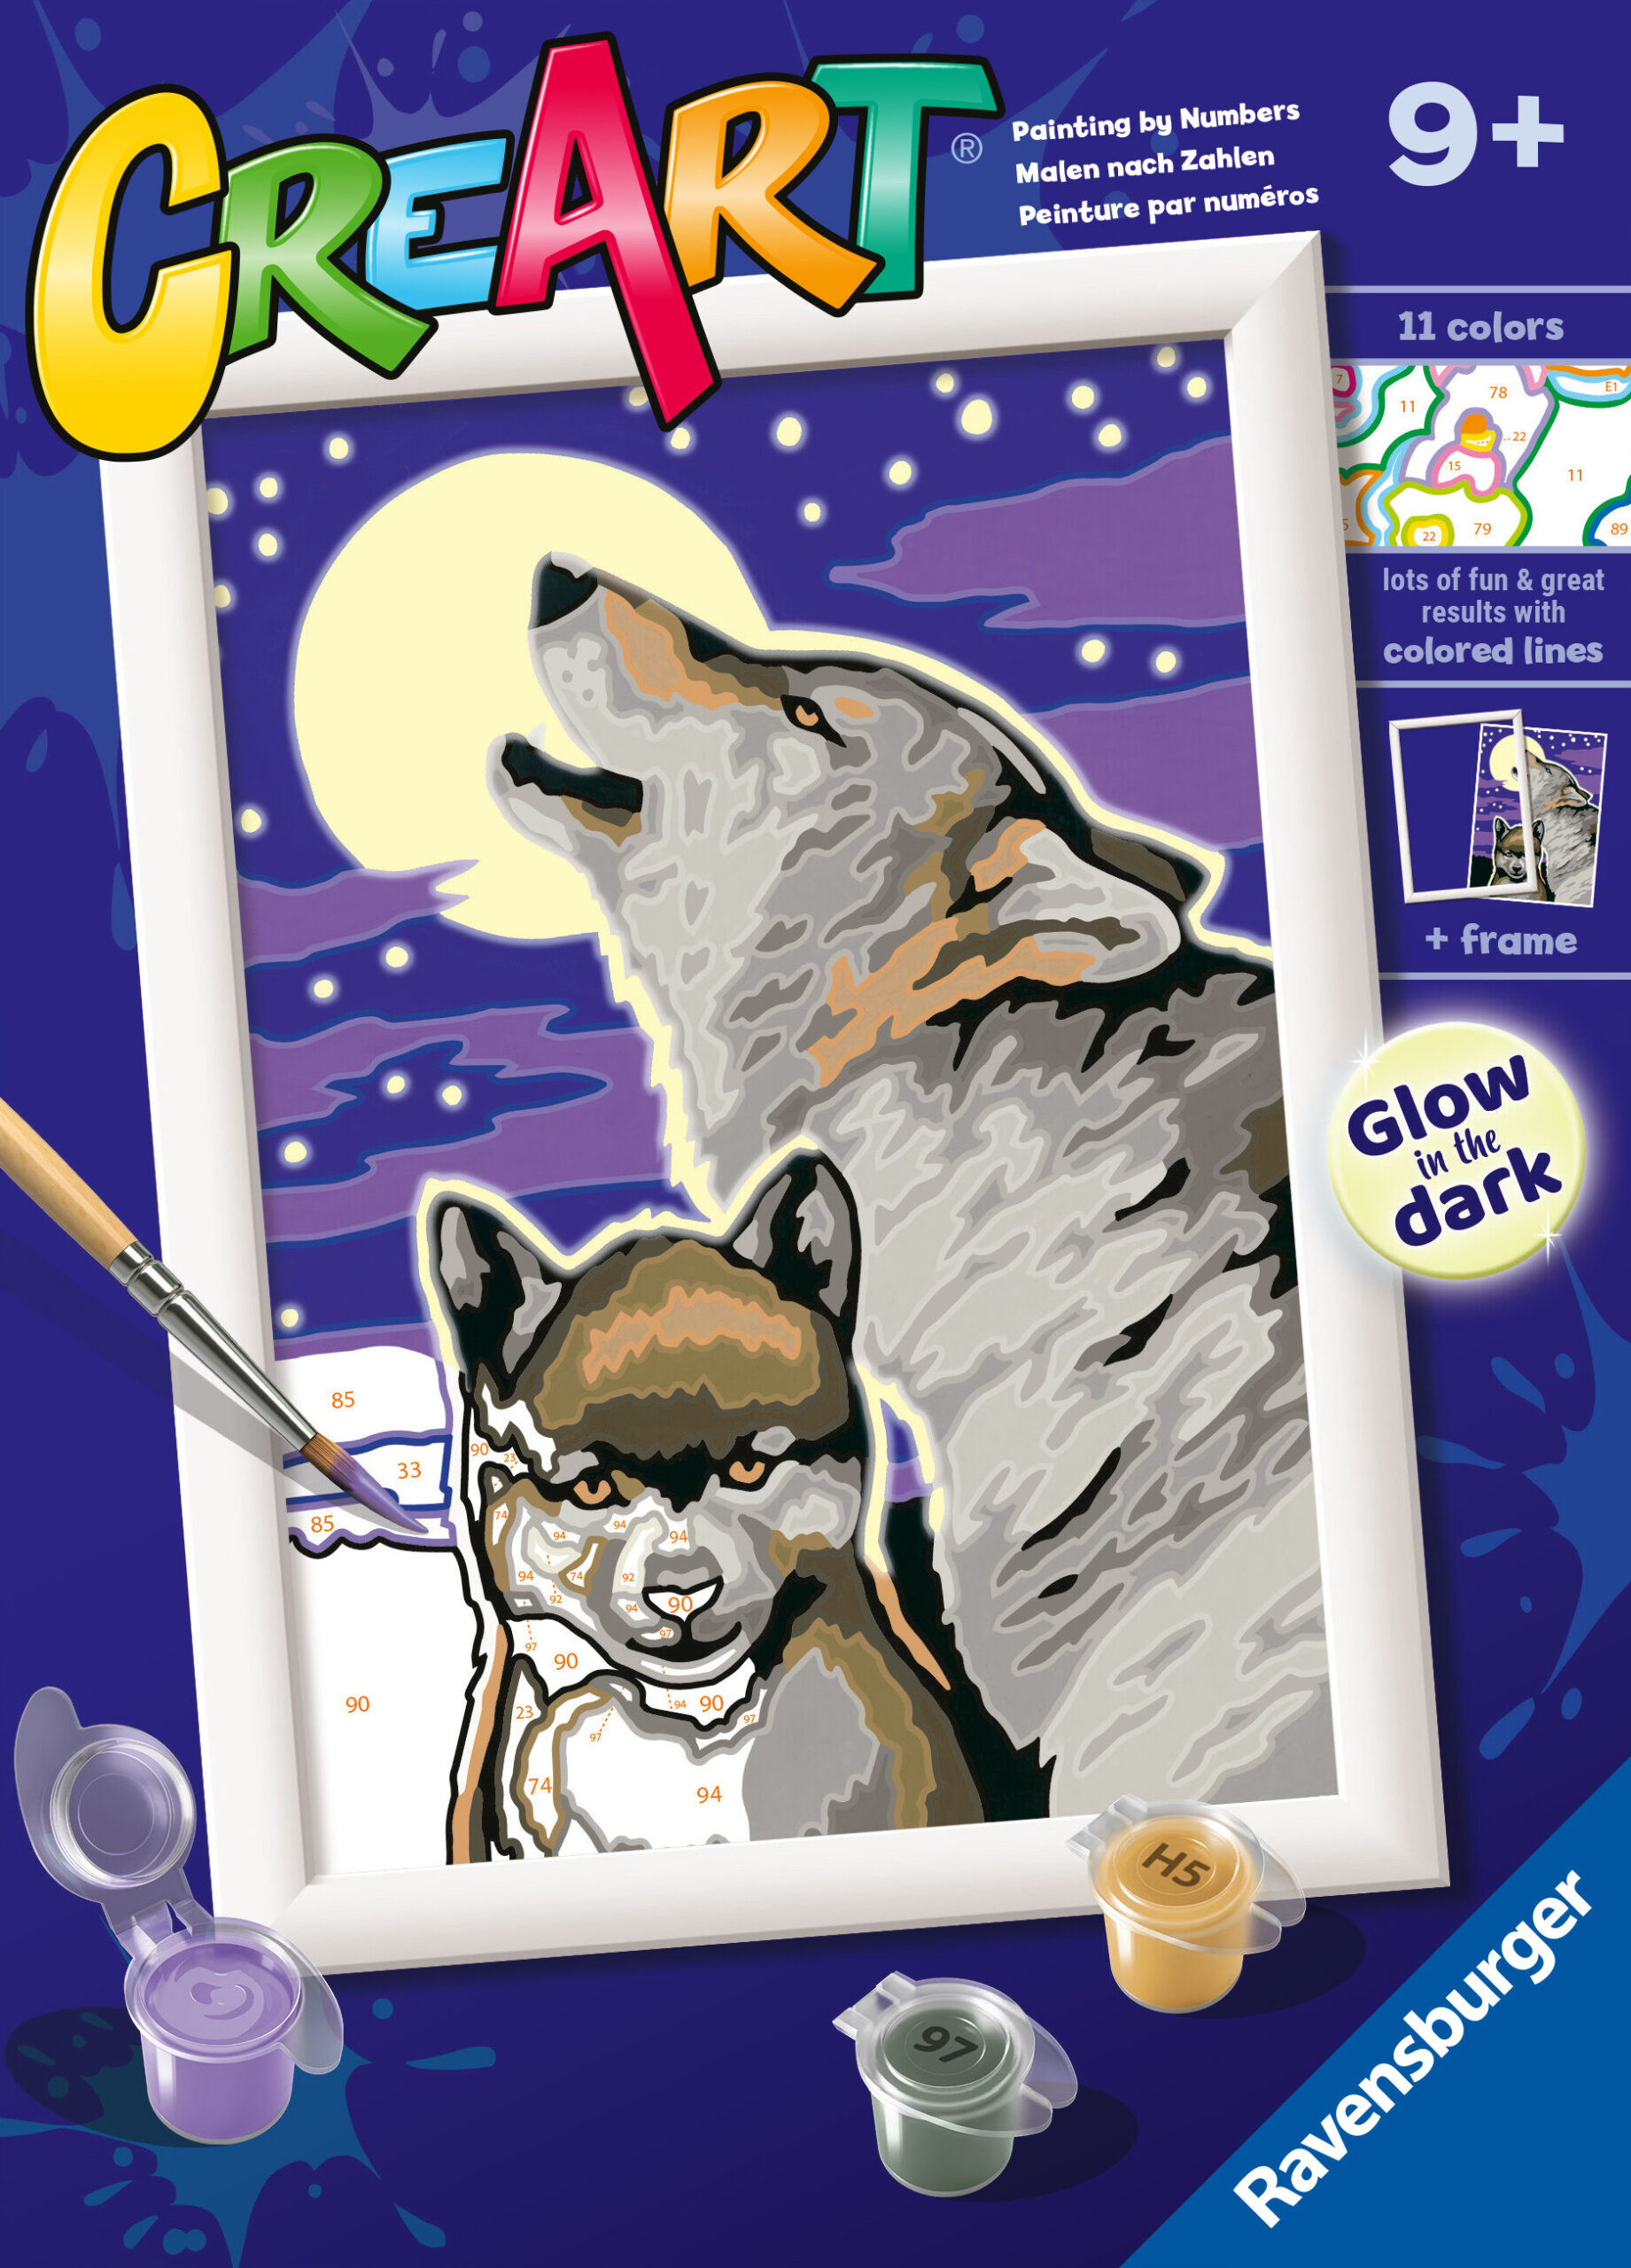 Ravensburger - creart serie e: lupi, kit per dipingere con i numeri, contiene una tavola prestampata, pennello, colori e accessori, gioco creativo per bambini 9+ anni - RAVENSBURGER